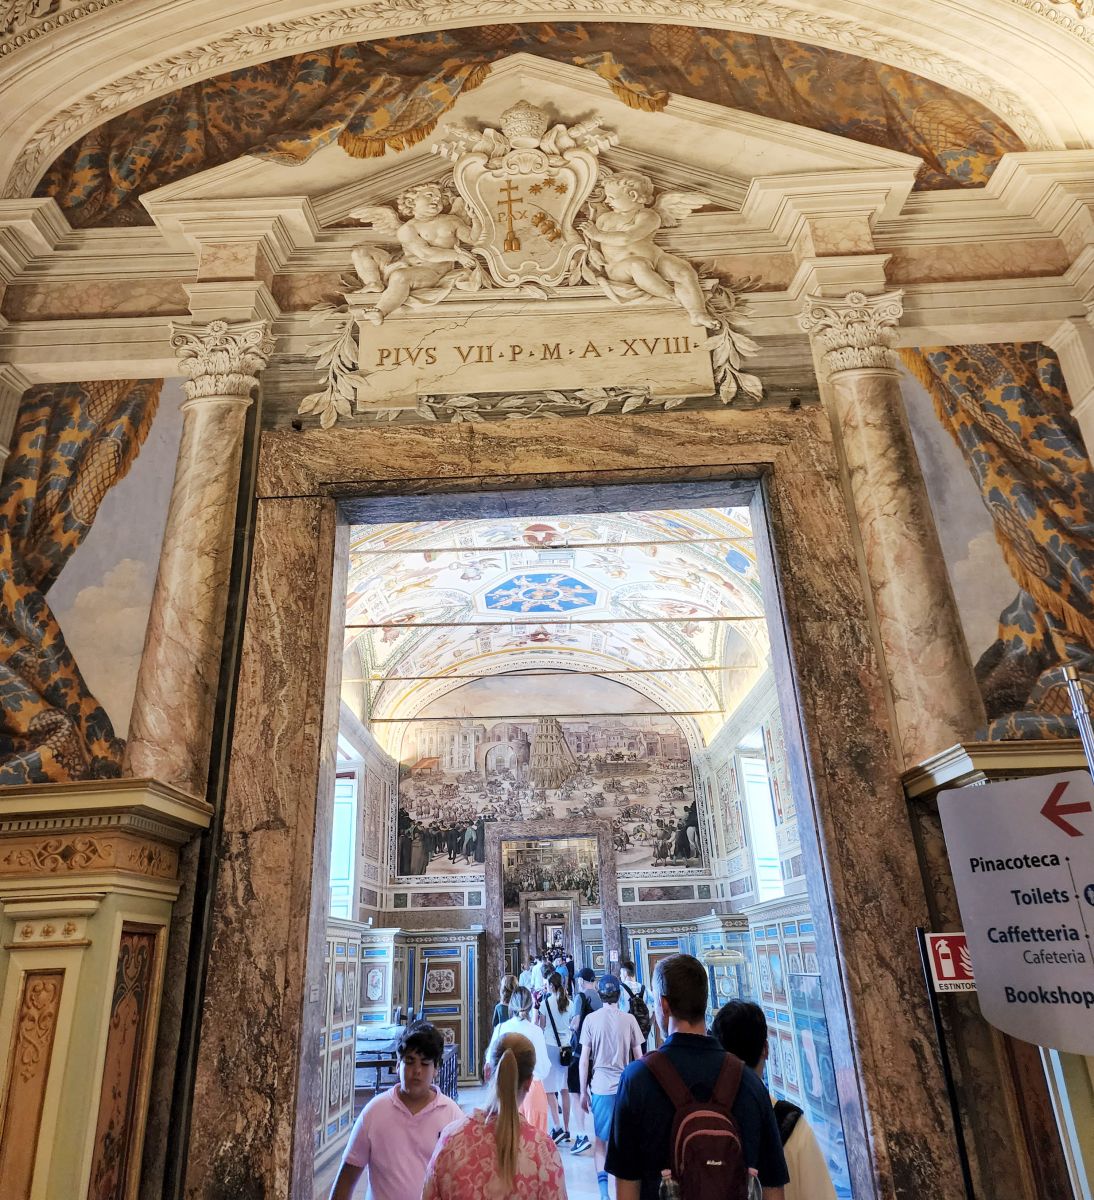 Canonbury Antiques Grand Tour - Vatican City Museum Interior